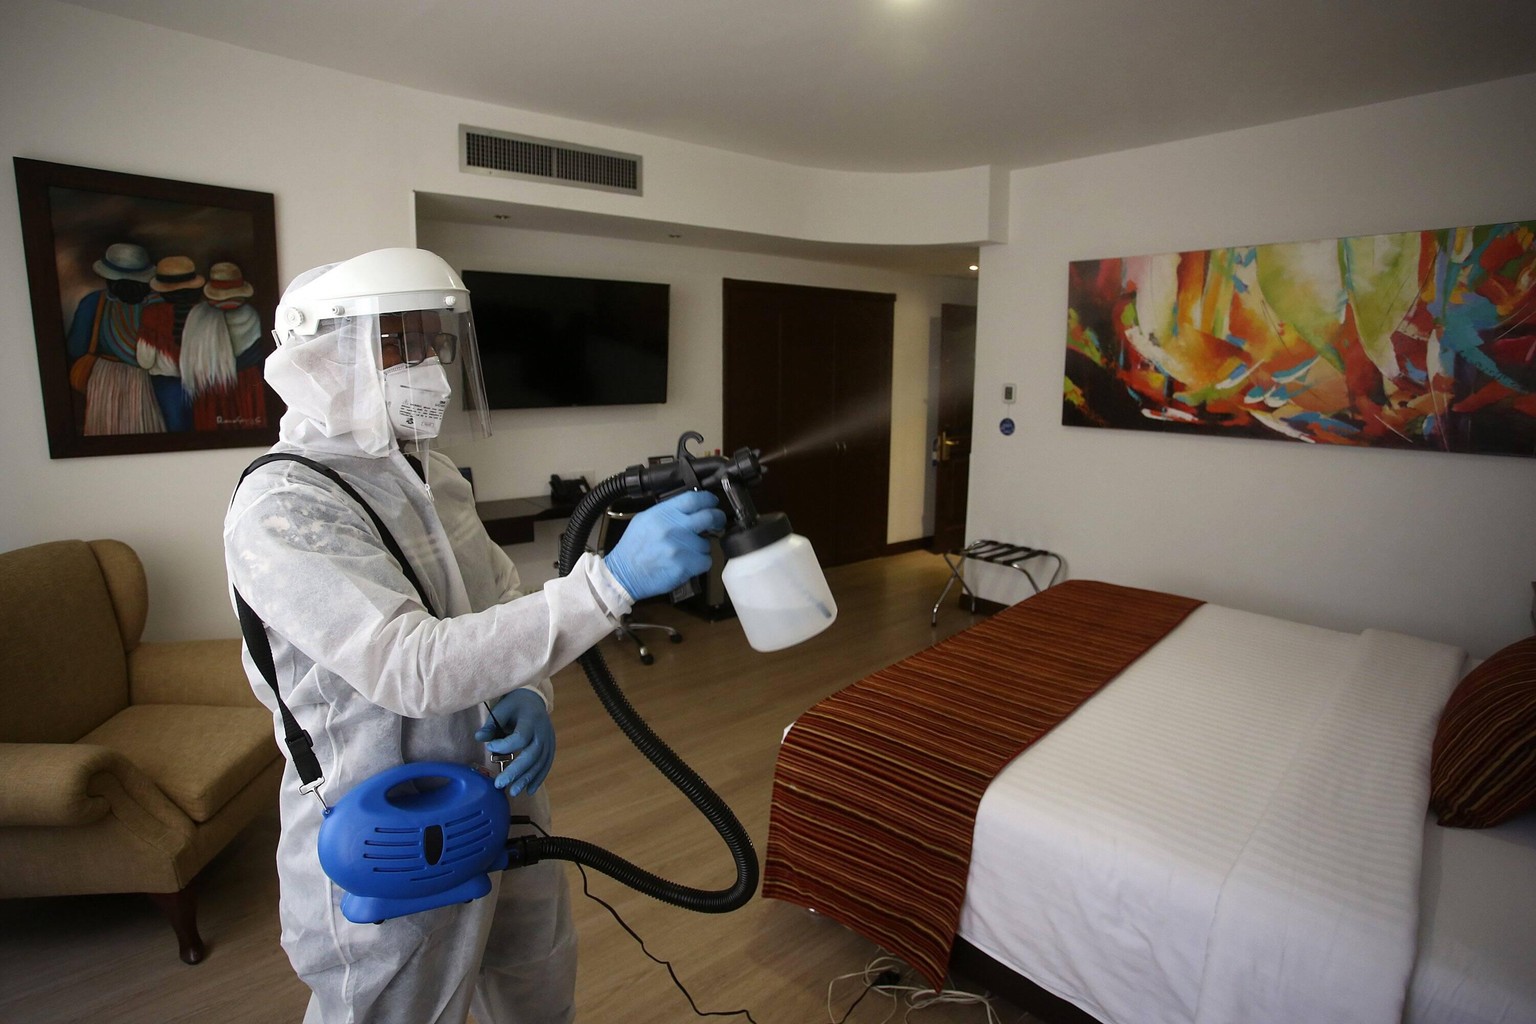 Viele Hotels haben Hygiene-Konzepten, die vorsehen, dass die Zimmer nach jedem Gast völlig desinfiziert werden.